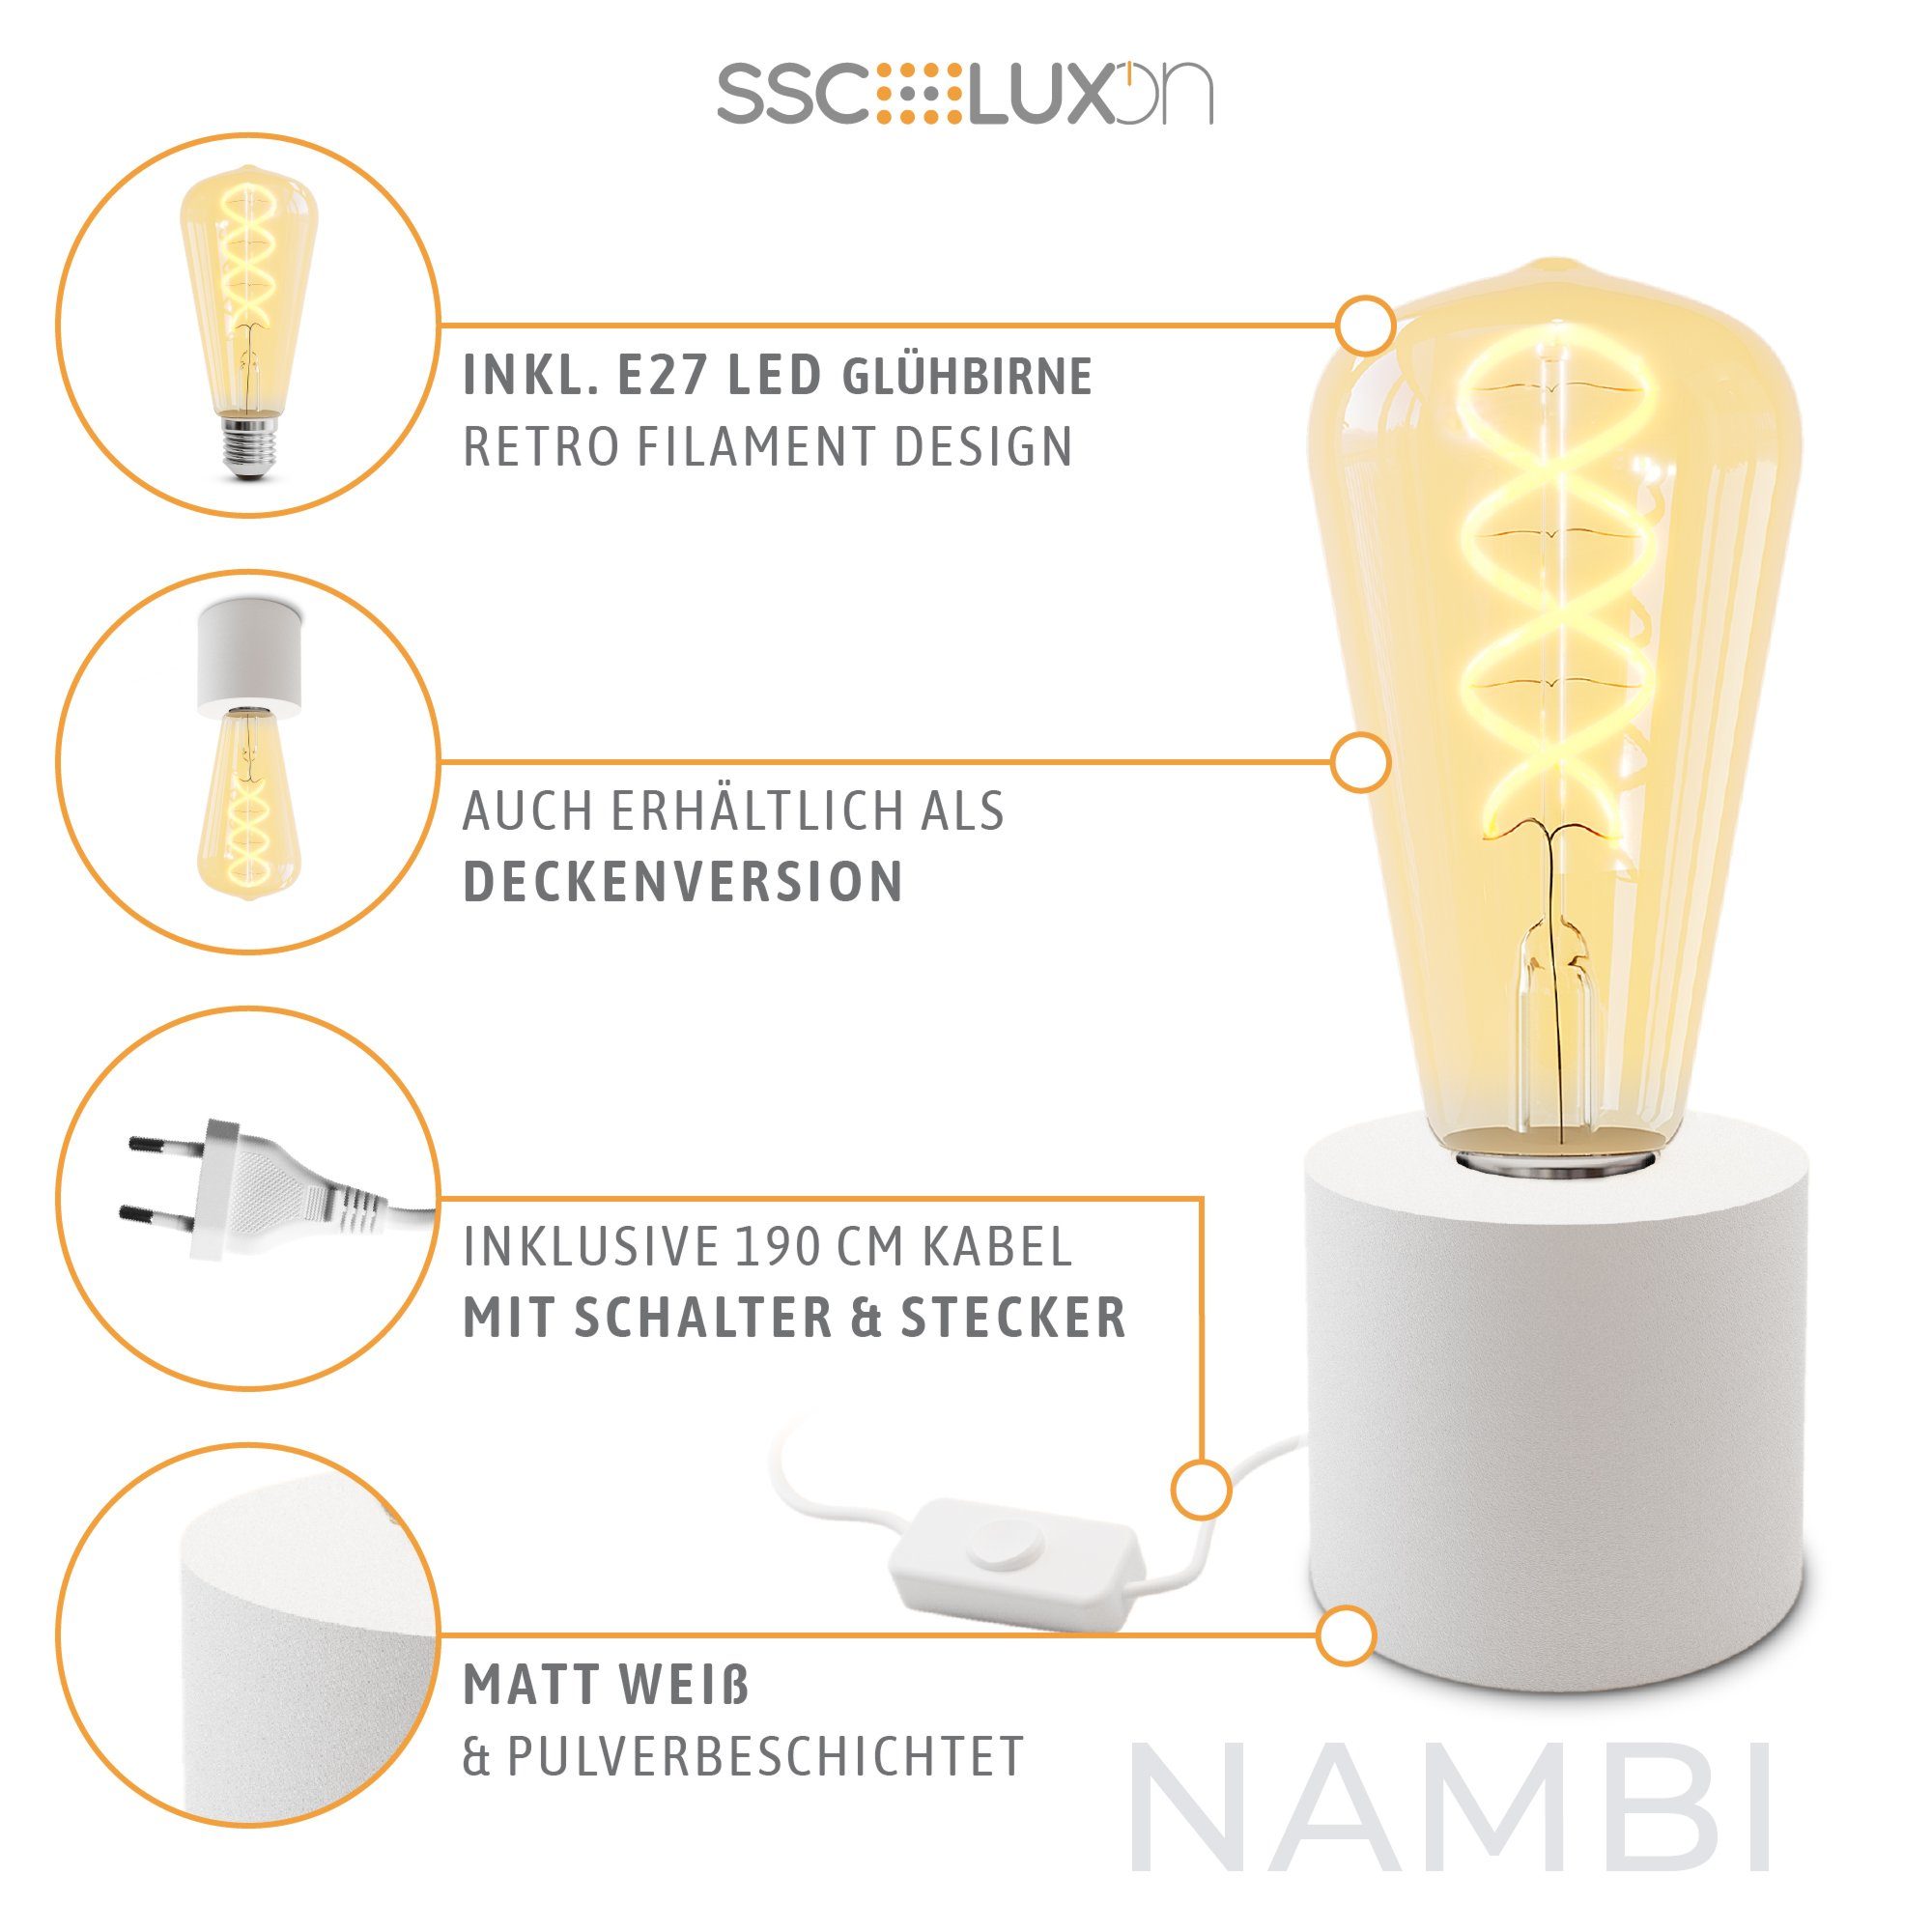 NAMBI mit Edison weiss Warmweiß Stecker Bilderleuchte E27, SSC-LUXon Kabel & Tischleuchte LED LED & Wand-